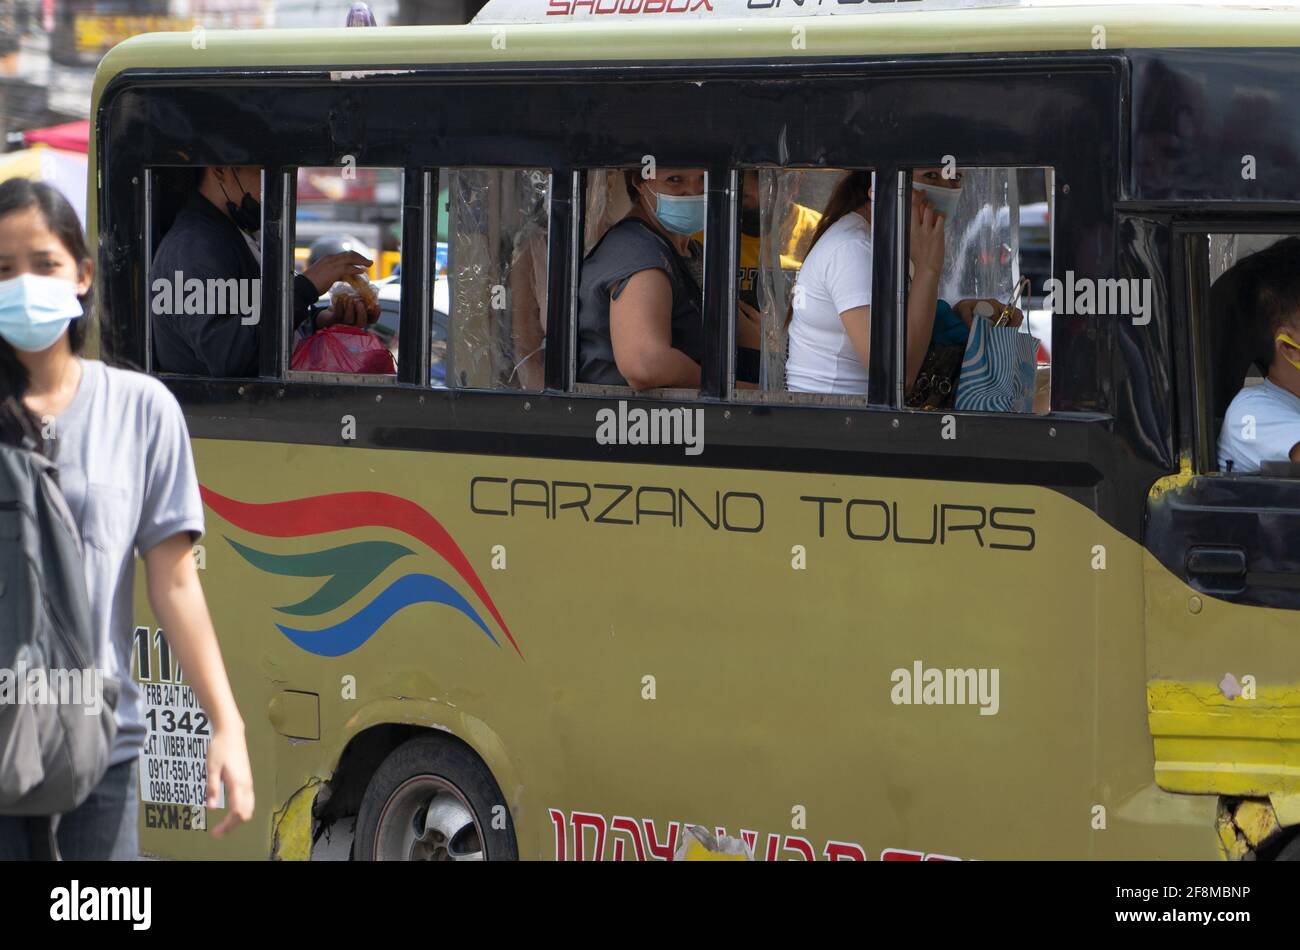 Passengers inside public utility vehicles wearing face masks, Cebu City, Philippines Stock Photo